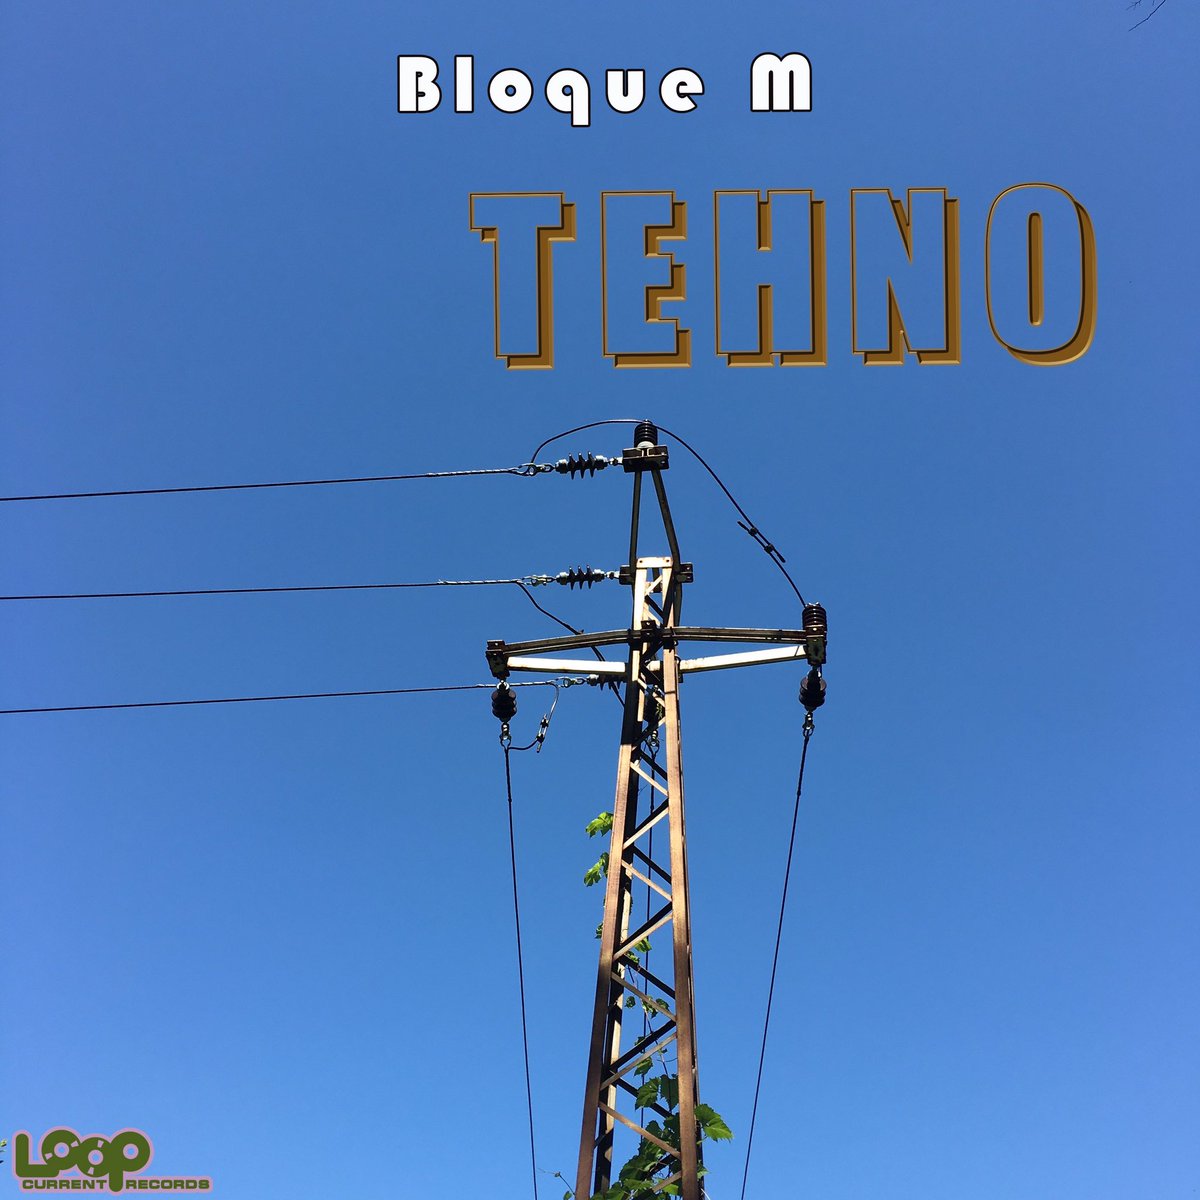 #Tehno

#TECHNO #TECHNOMUSIC #DETROITTECHNO

#BloqueM @BloqueMetro 

#LoopCurrentRecords @LoopCurrentRec 

music.apple.com/us/album/tehno…